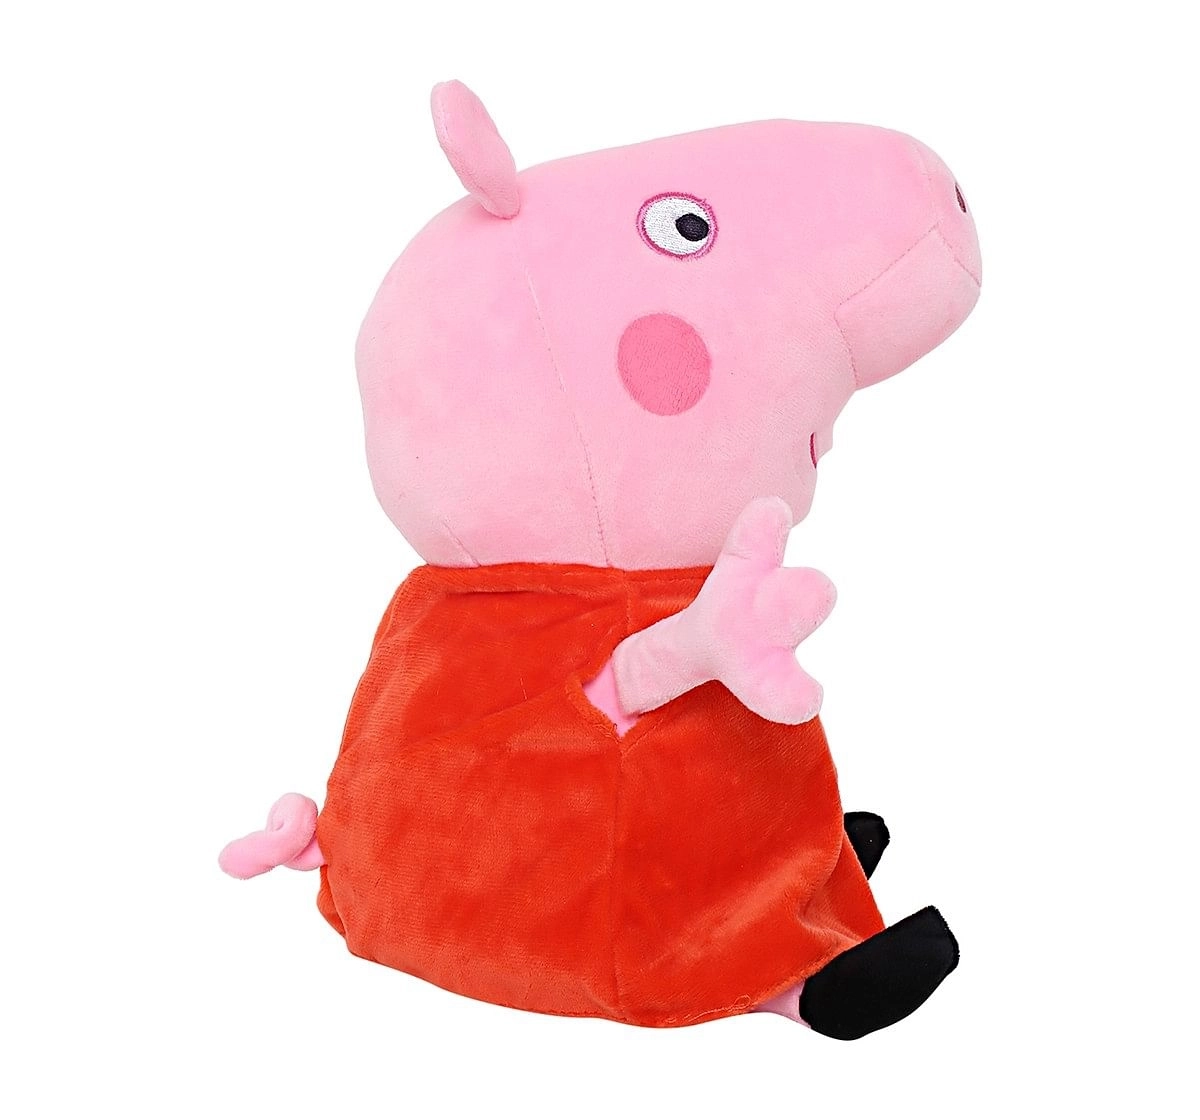 Peppa Pig 30 Cm Soft Toy for Kids age 2Y+ (Orange)